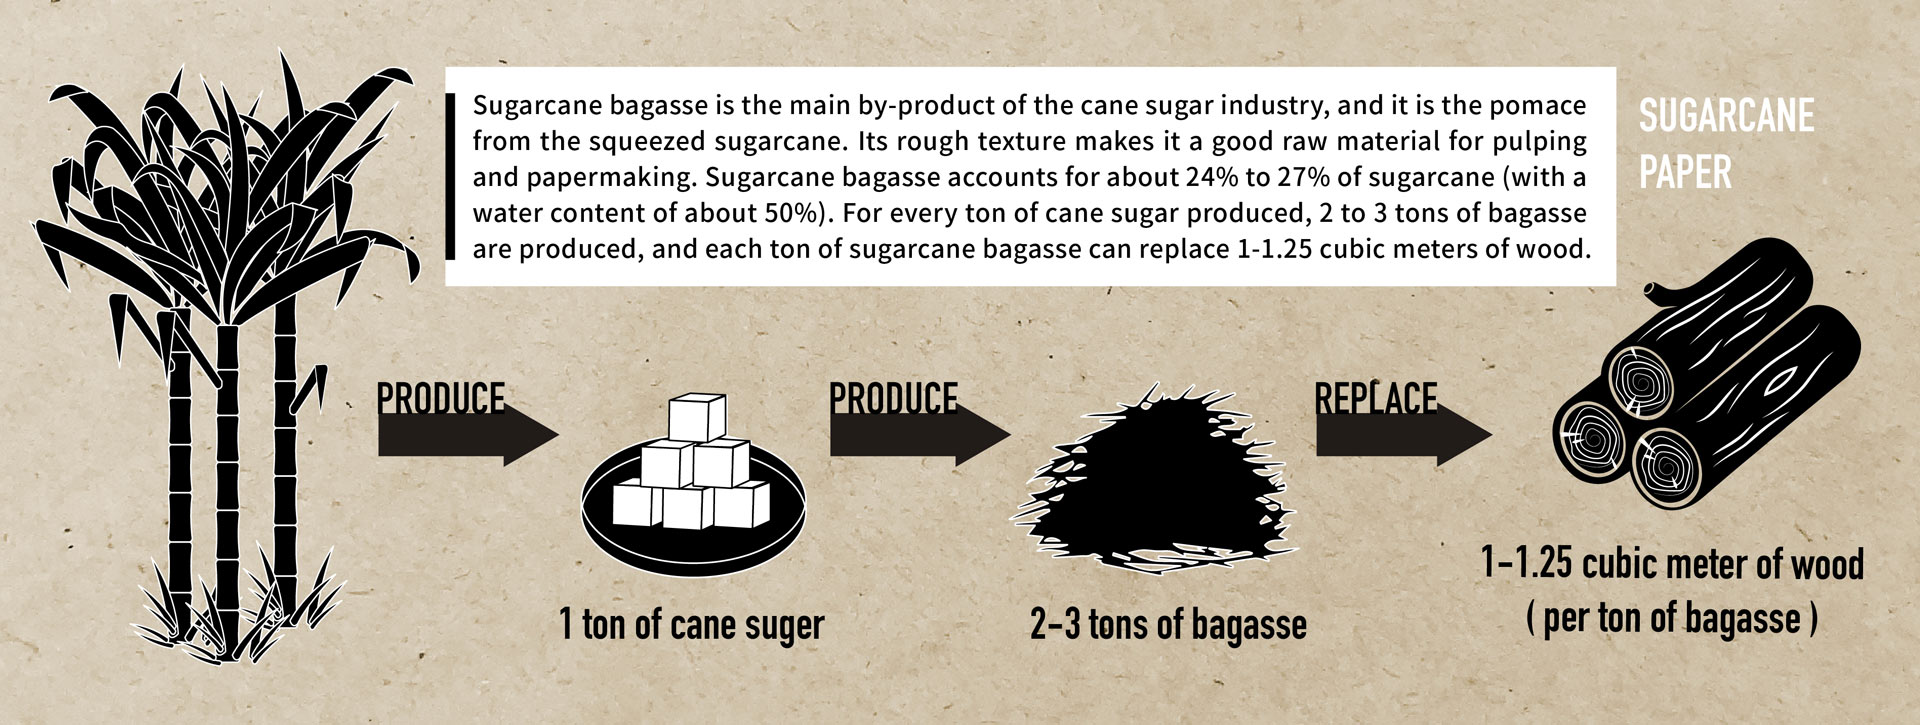 Sugarcane-Paper production